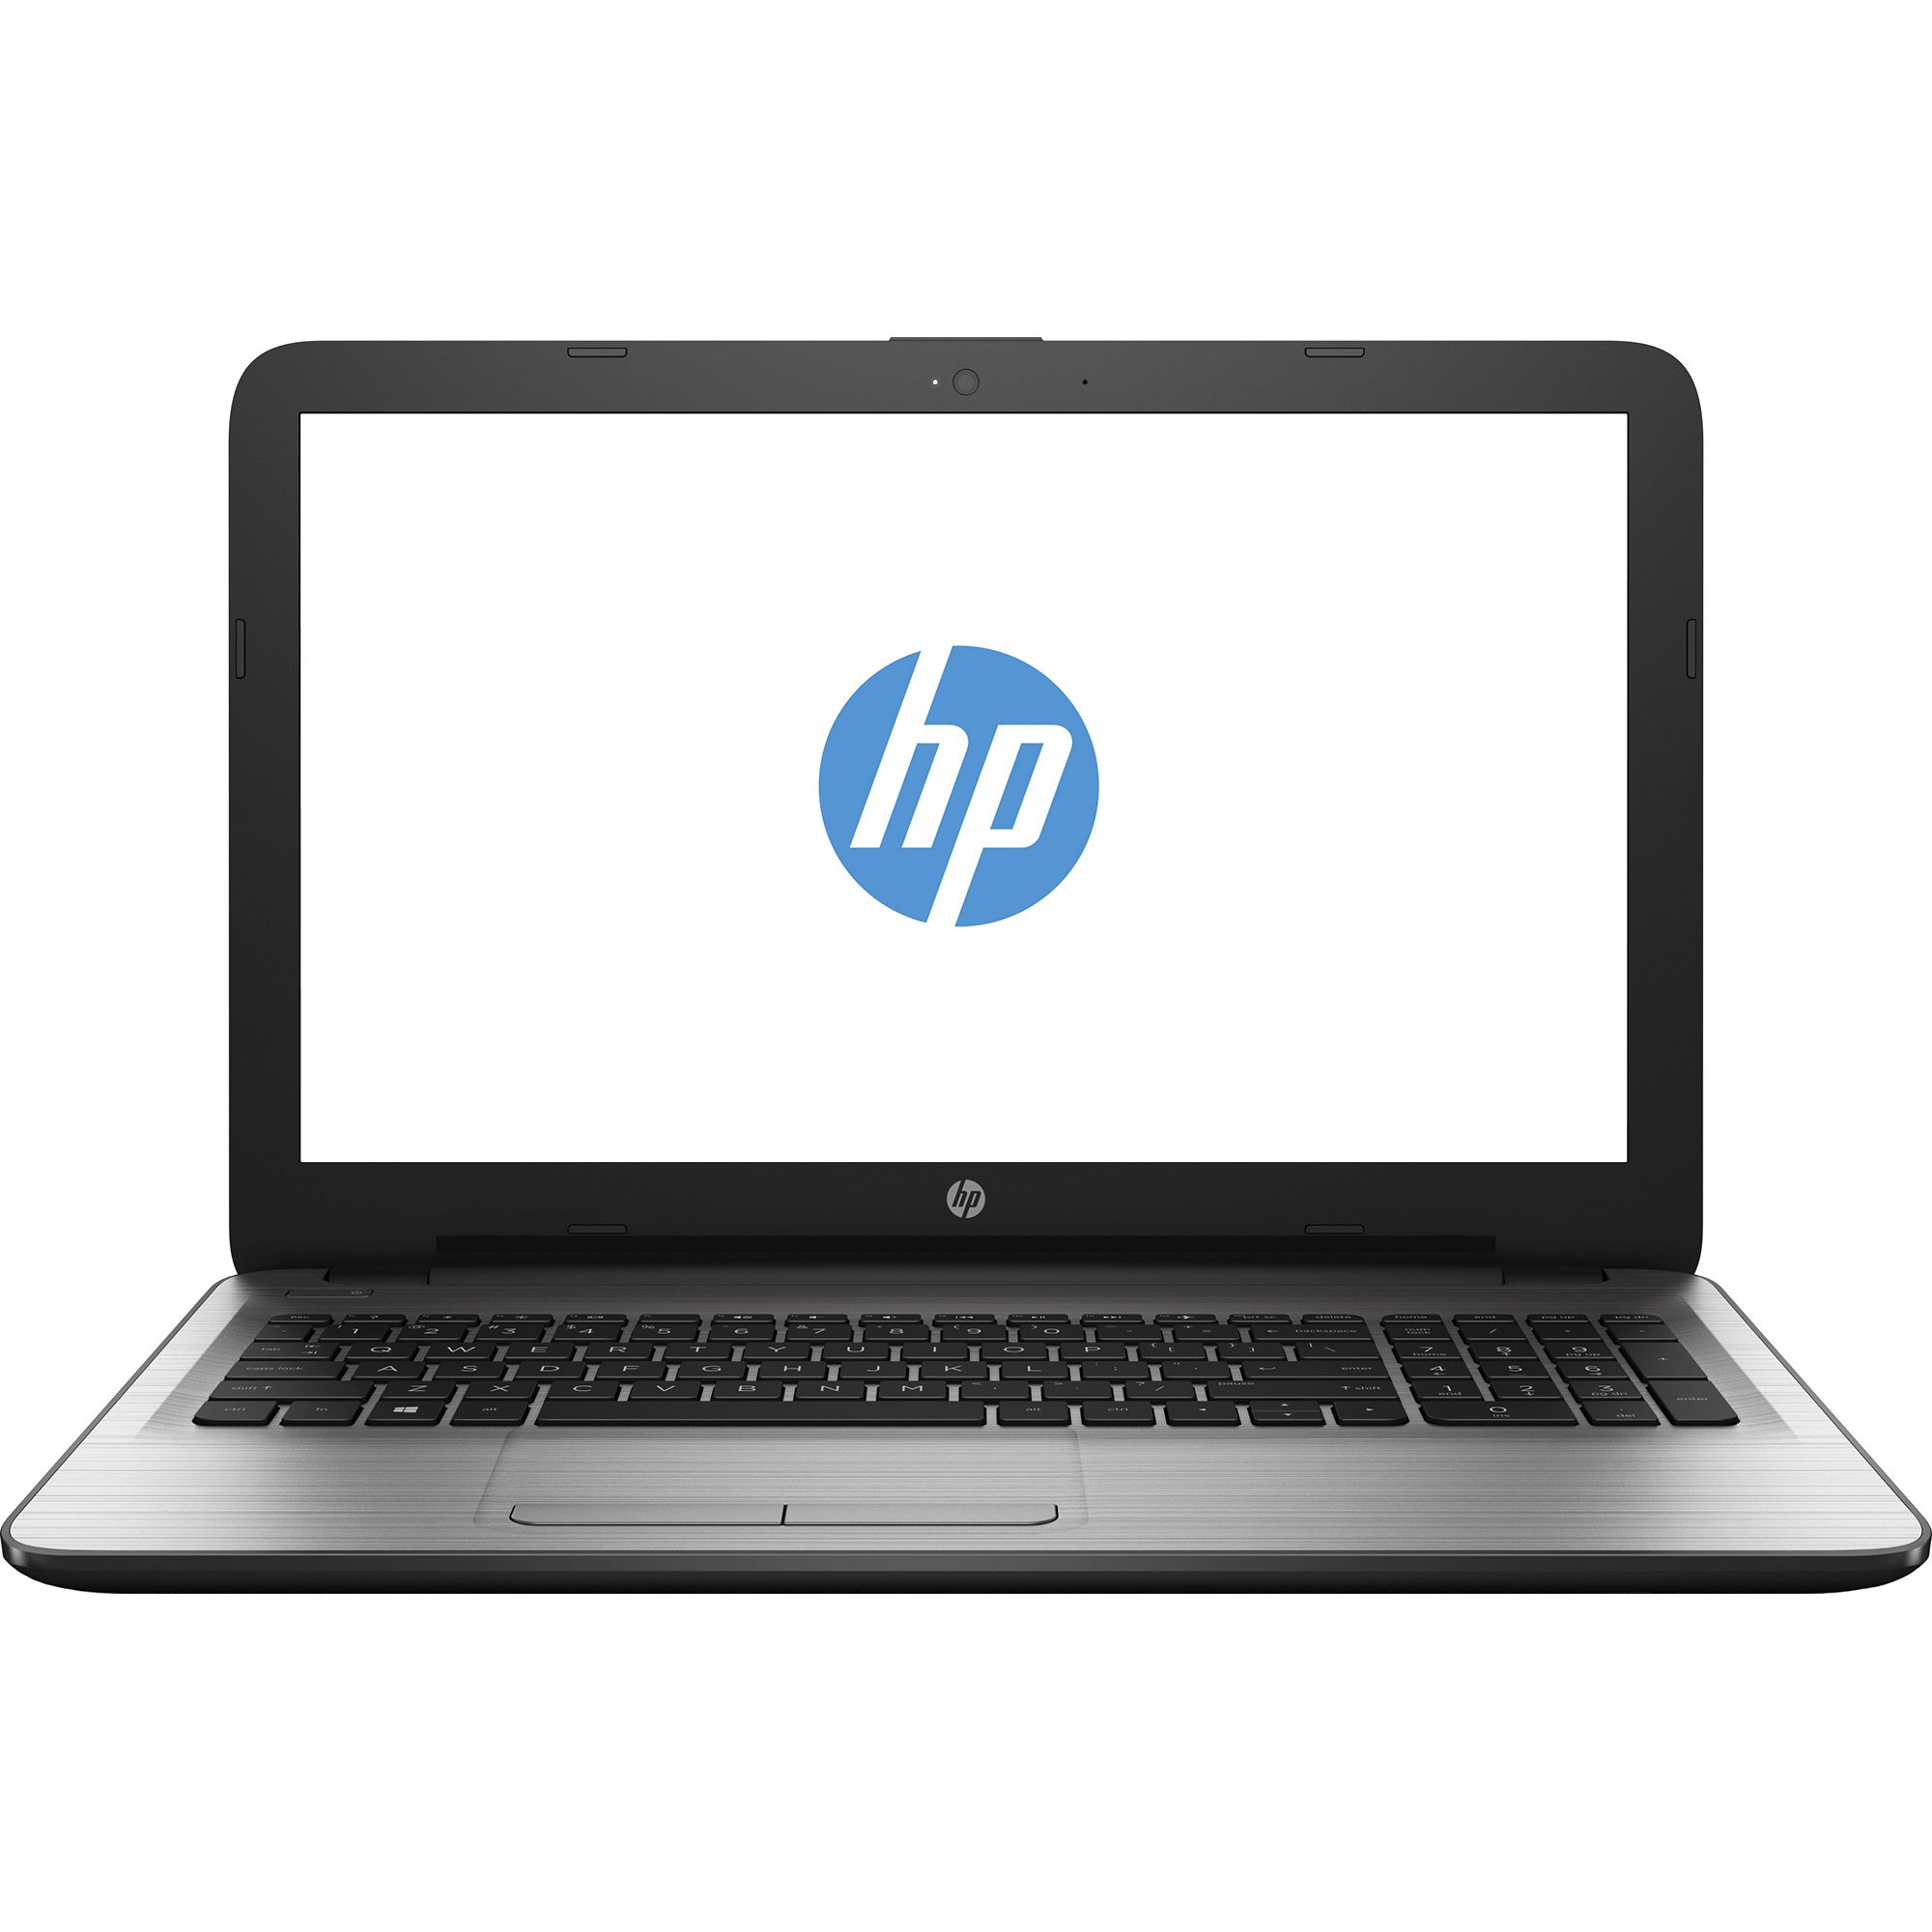 Laptop HP 250 G5, Intel Core i5-6200U, 4GB DDR4, HDD 500GB, AMD Radeon R5 M430 2GB, Free DOS